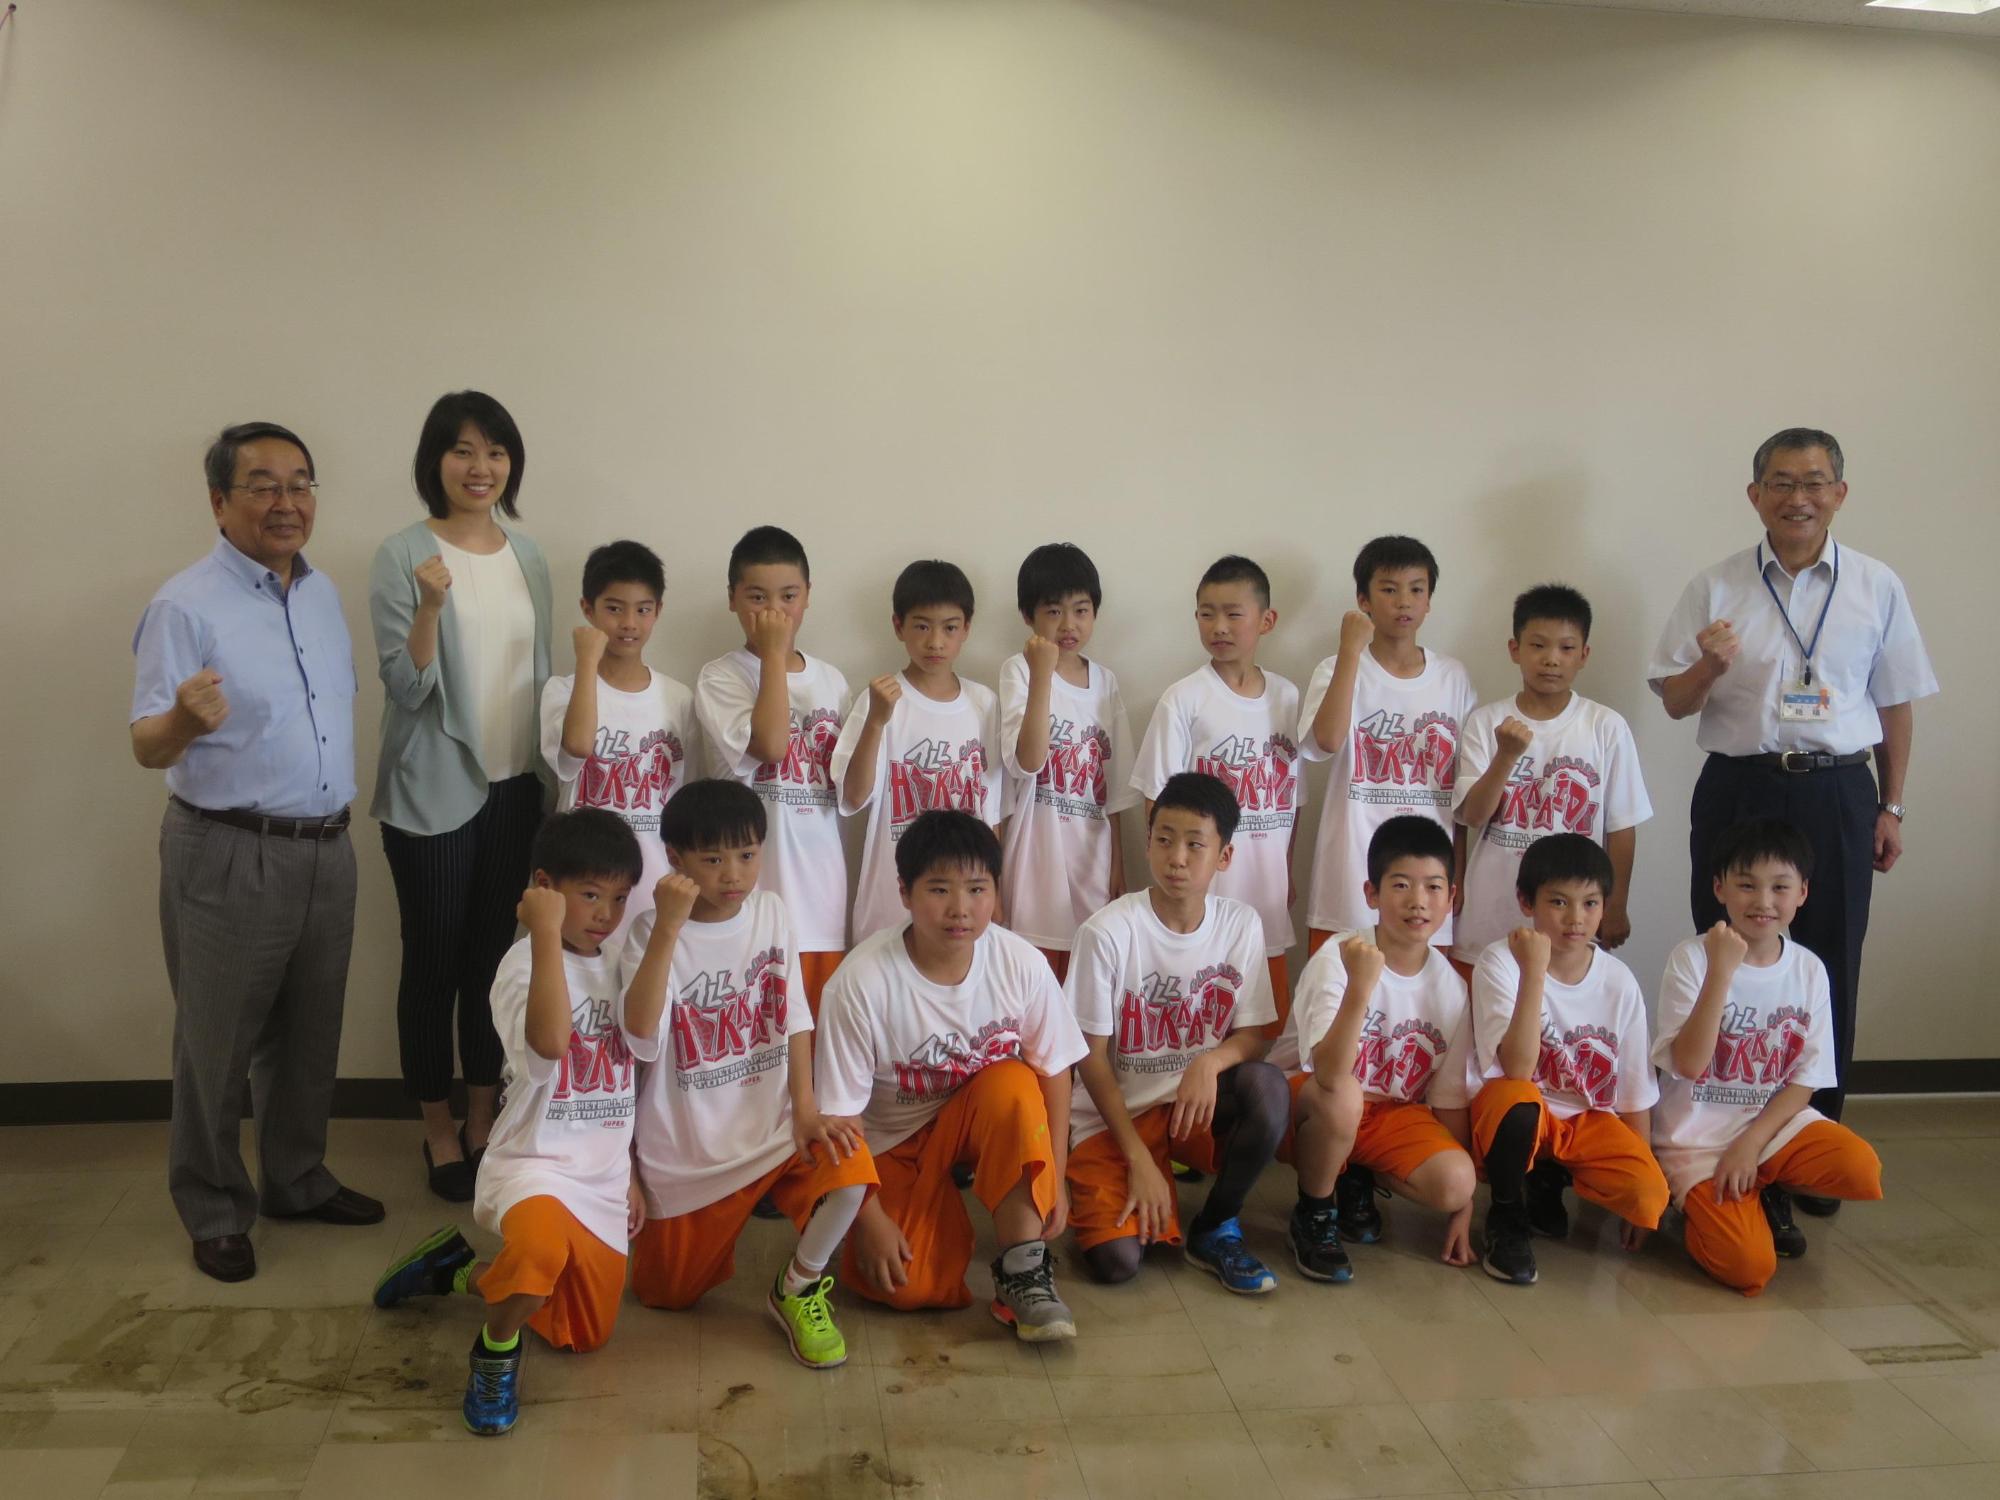 島松ミニバスケットボール少年団の選手らと原田市長が記念撮影している写真